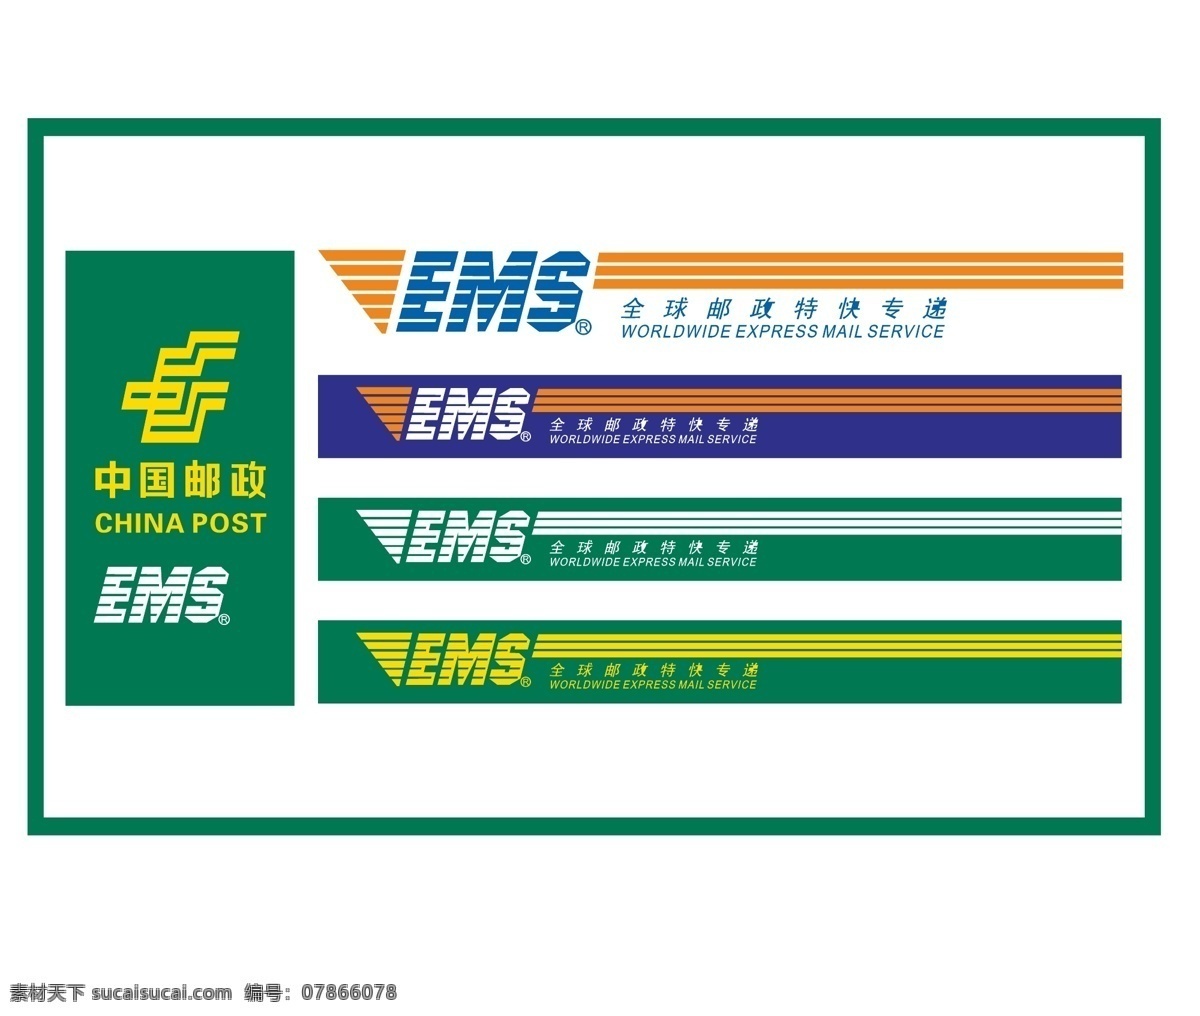 中国 邮政 logo 邮政快递 邮箱速运 ems 邮政矢量图 邮政logo 标志图标 企业 标志